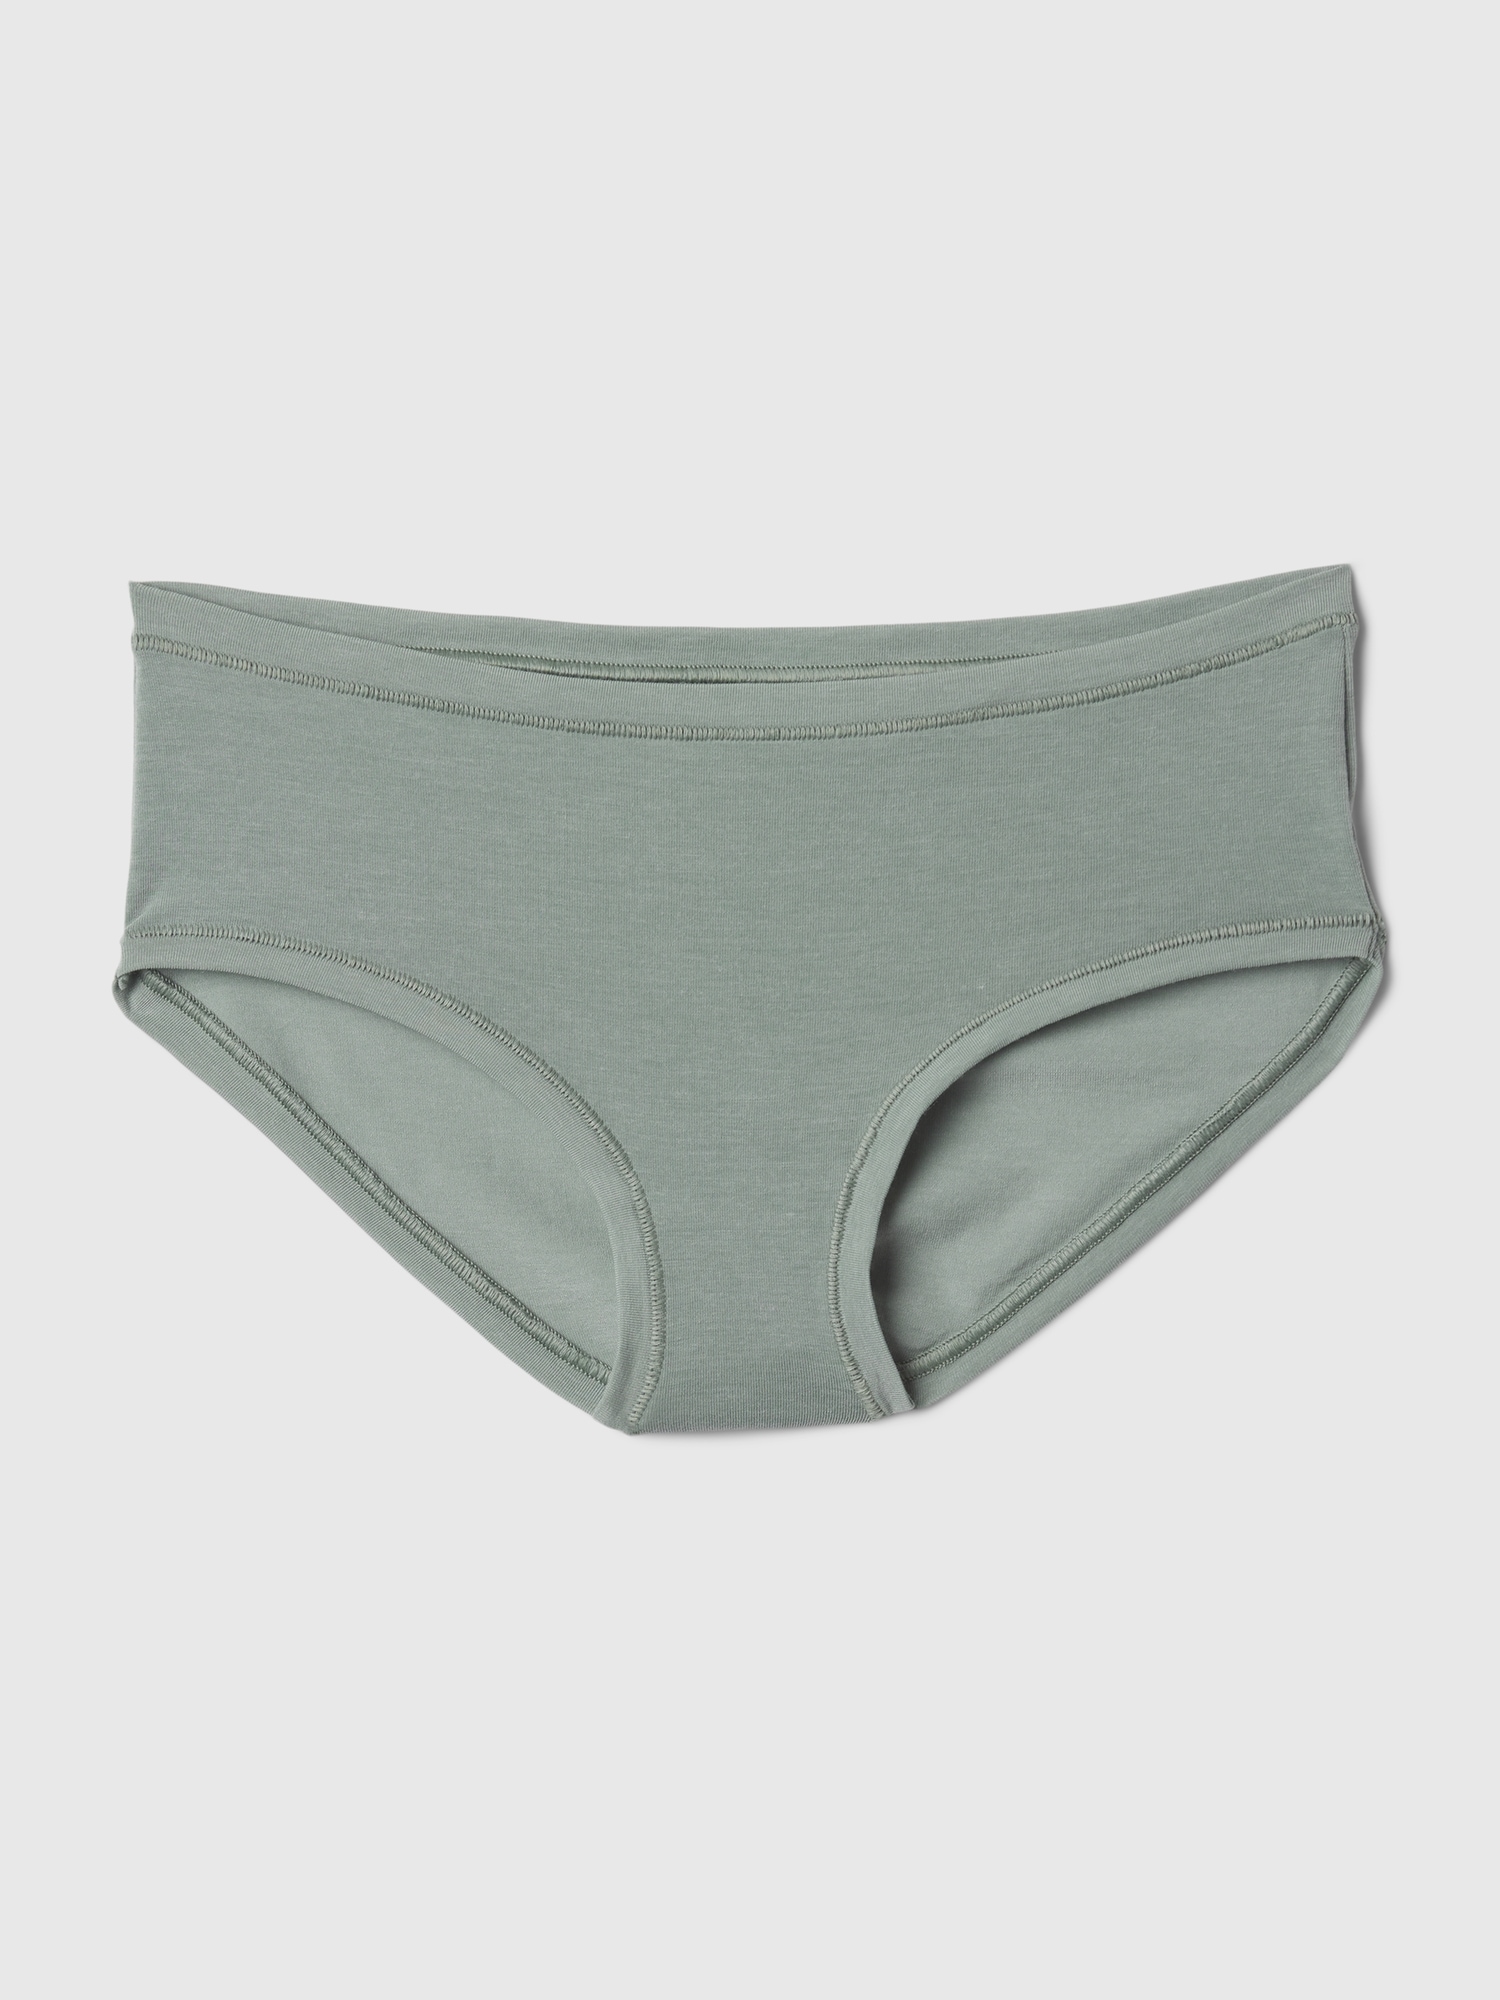 New Balance Women's Breathe mesh Ultra Lightweight Hipster Underwear (Pack  of 1)